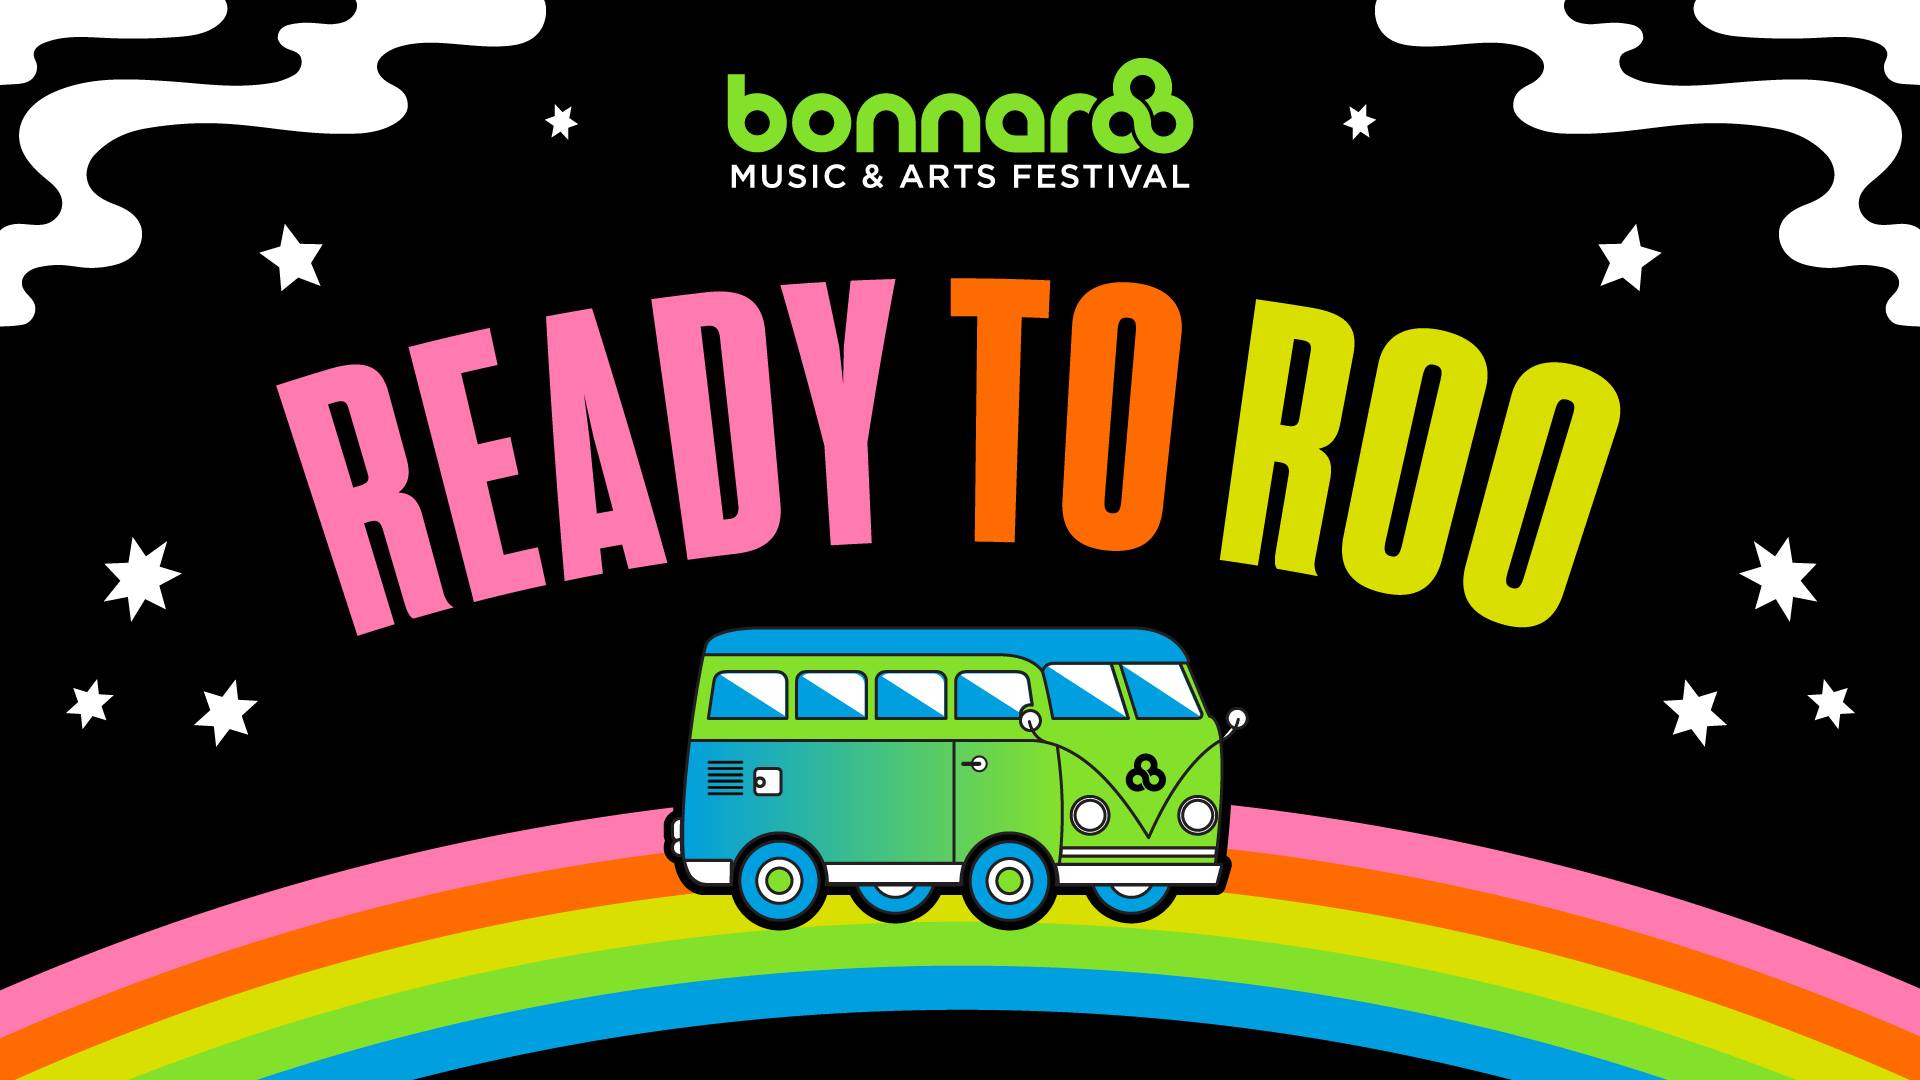 Bonnaroo Unveils “Ready to Roo” Tour